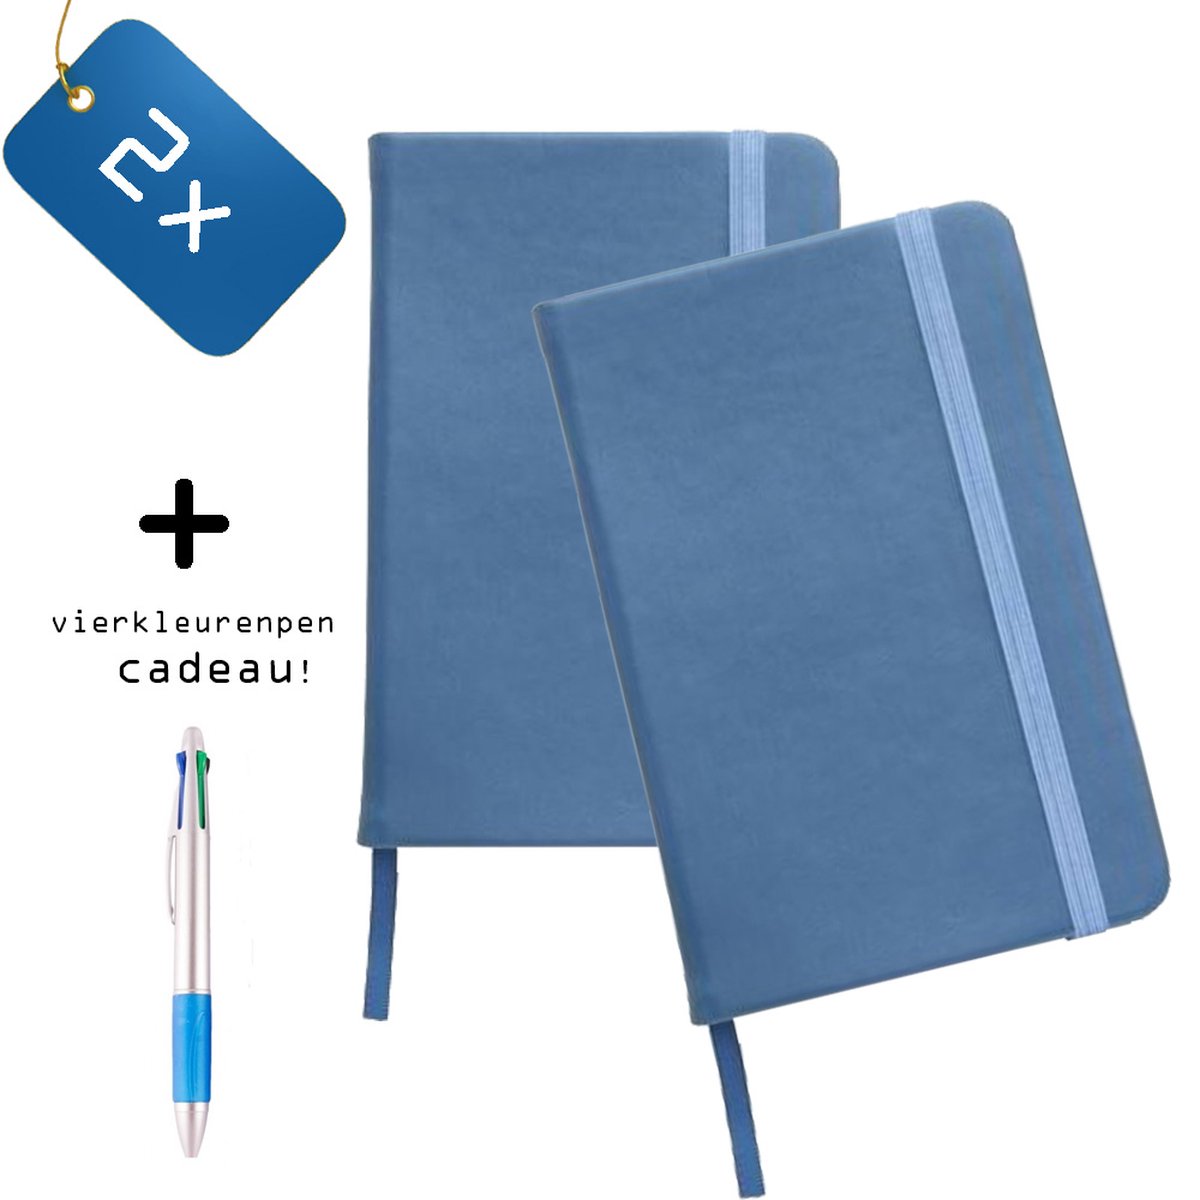 Pack van 2x Notitieboeken A5 Blauw + Vierkleurenpen Cadeau - Hardvoer - Harde Kaft - Gelijnd - A5 formaat - Elastiek